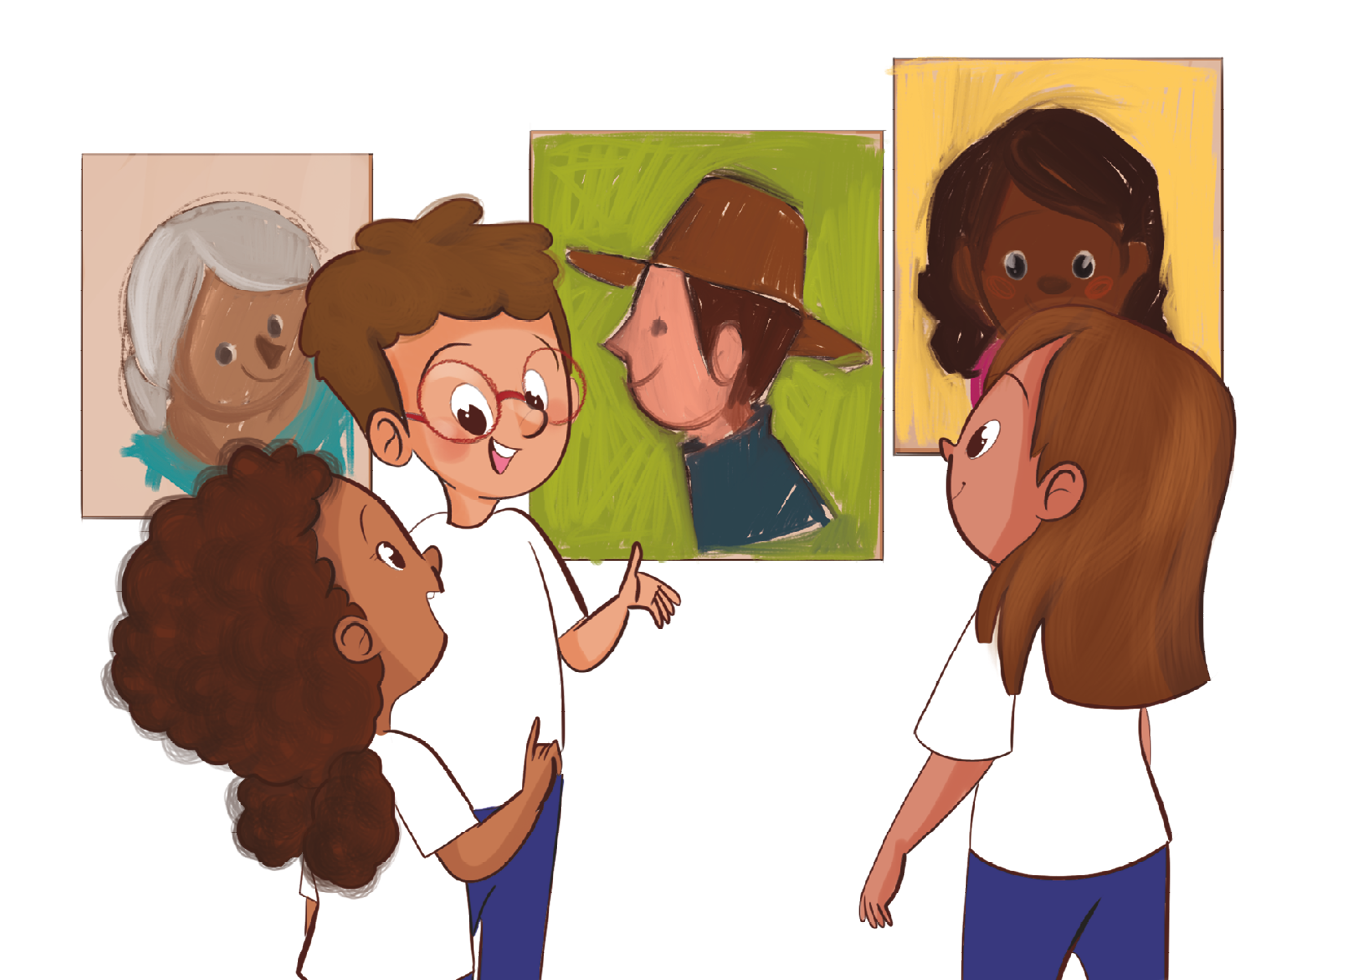 Ilustração. Um menino e  duas meninas usando uniforme de camiseta branca e shorts azuis estão em pé de frente para três quadros com desenhos e pinturas de rostos humanos; eles conversam e sorriem.